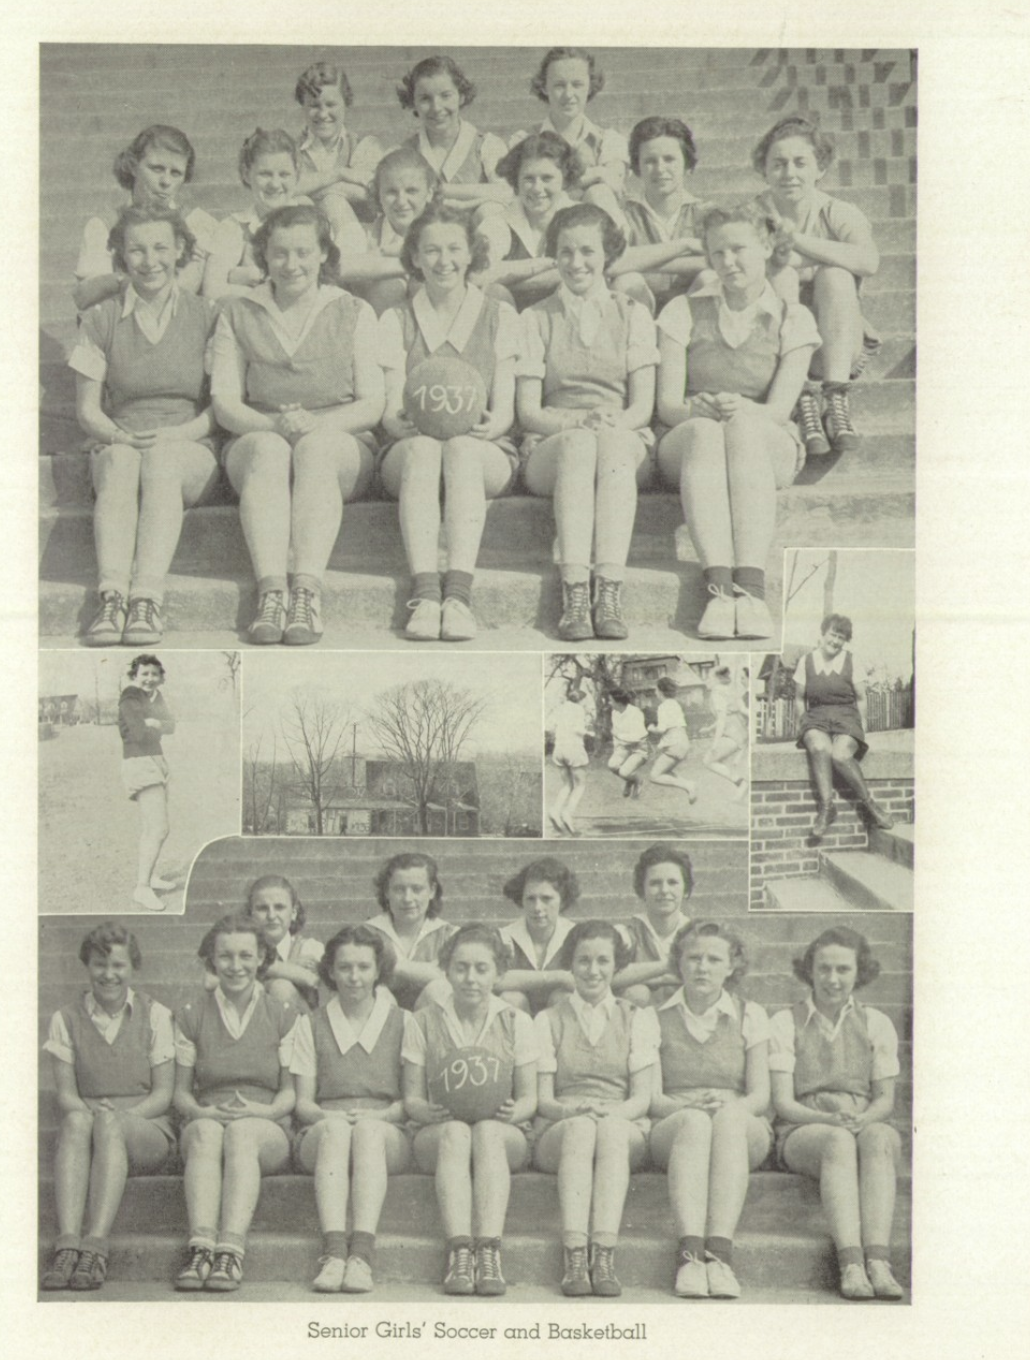 1937 Girls’ Soccer Team